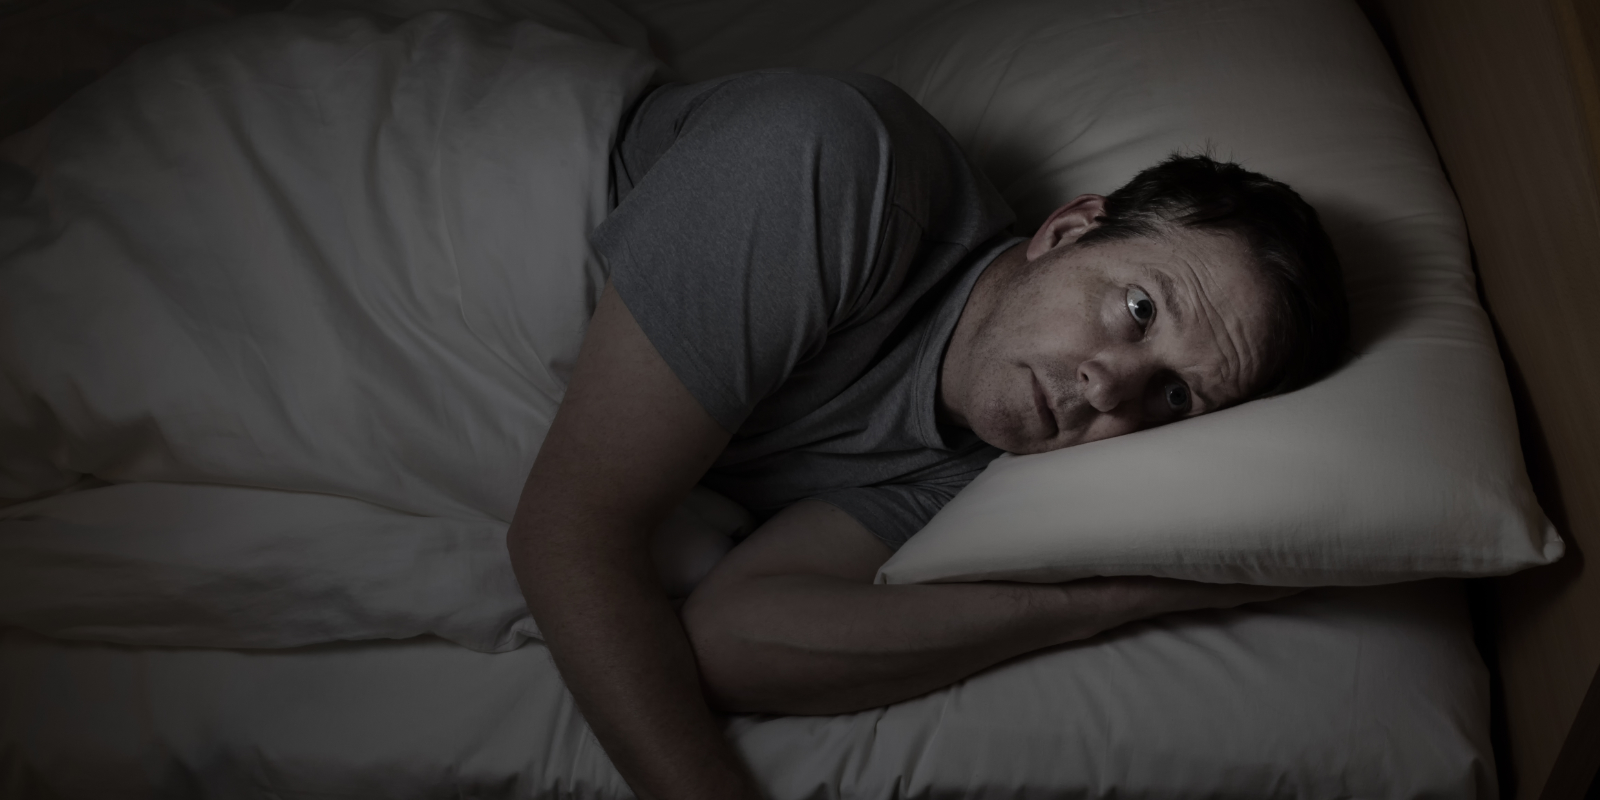 Schlaf: Mit wenigen Regeln zu einem besseren Leben